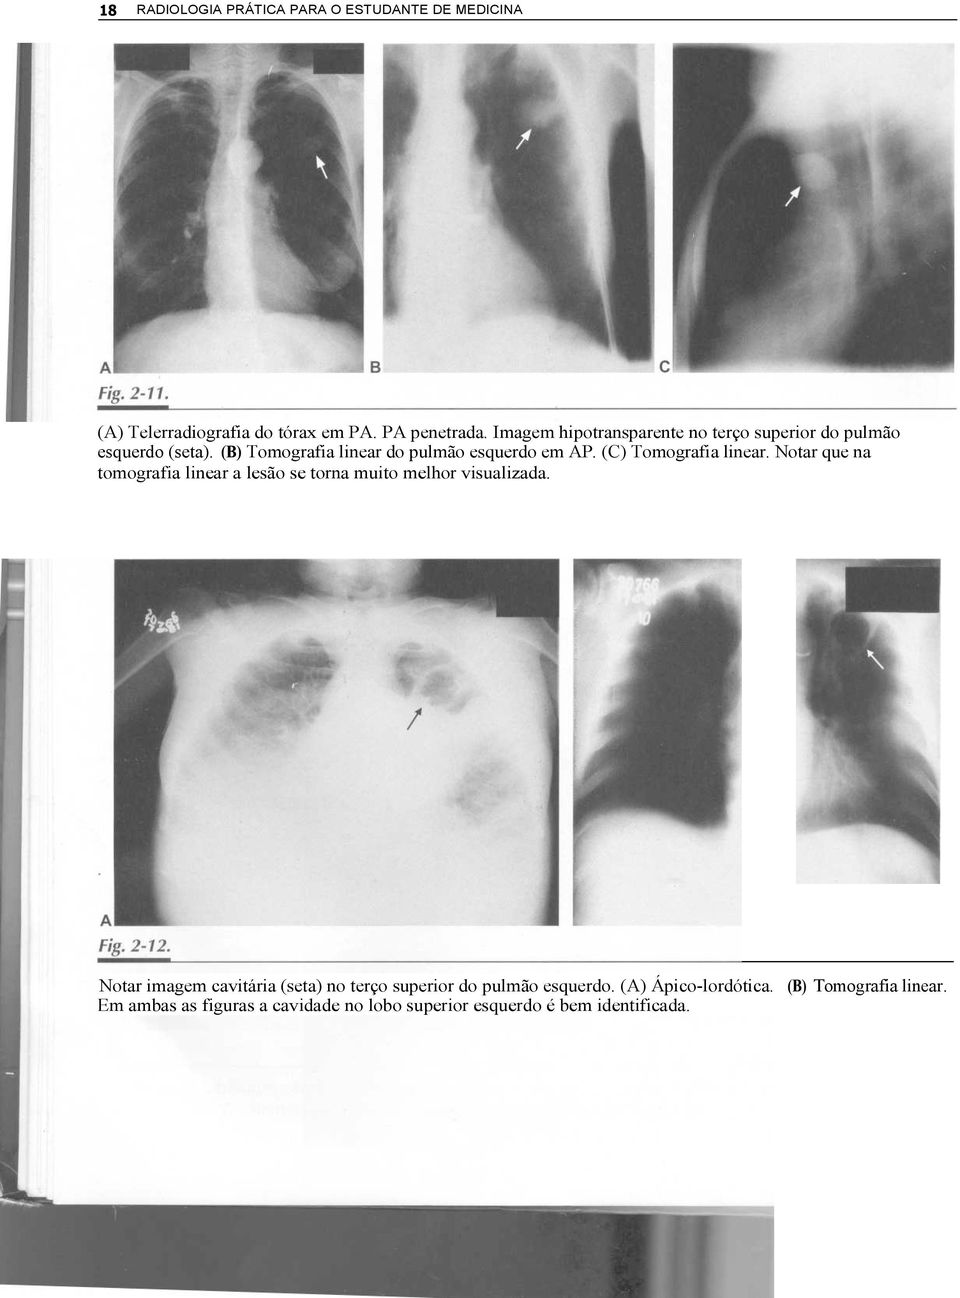 (C) Tomografia linear. Notar que na tomografia linear a lesão se torna muito melhor visualizada.